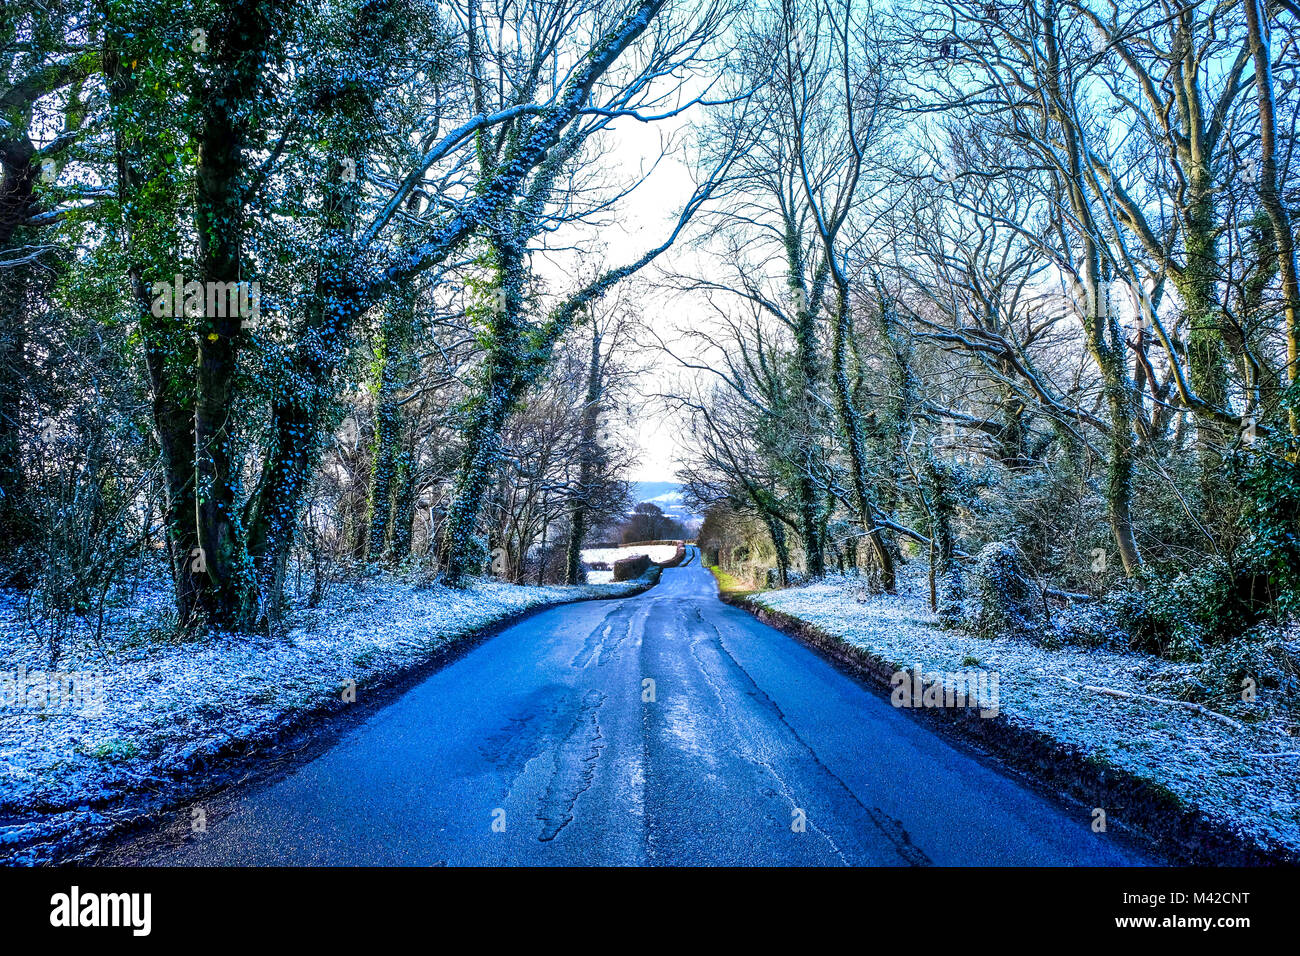 Un viale alberato vicolo del paese con la discesa, aspalt patch sulla strada, di uno strato di neve bianca su ciascun lato che copre il terreno e gli alberi, bassa inverno Foto Stock